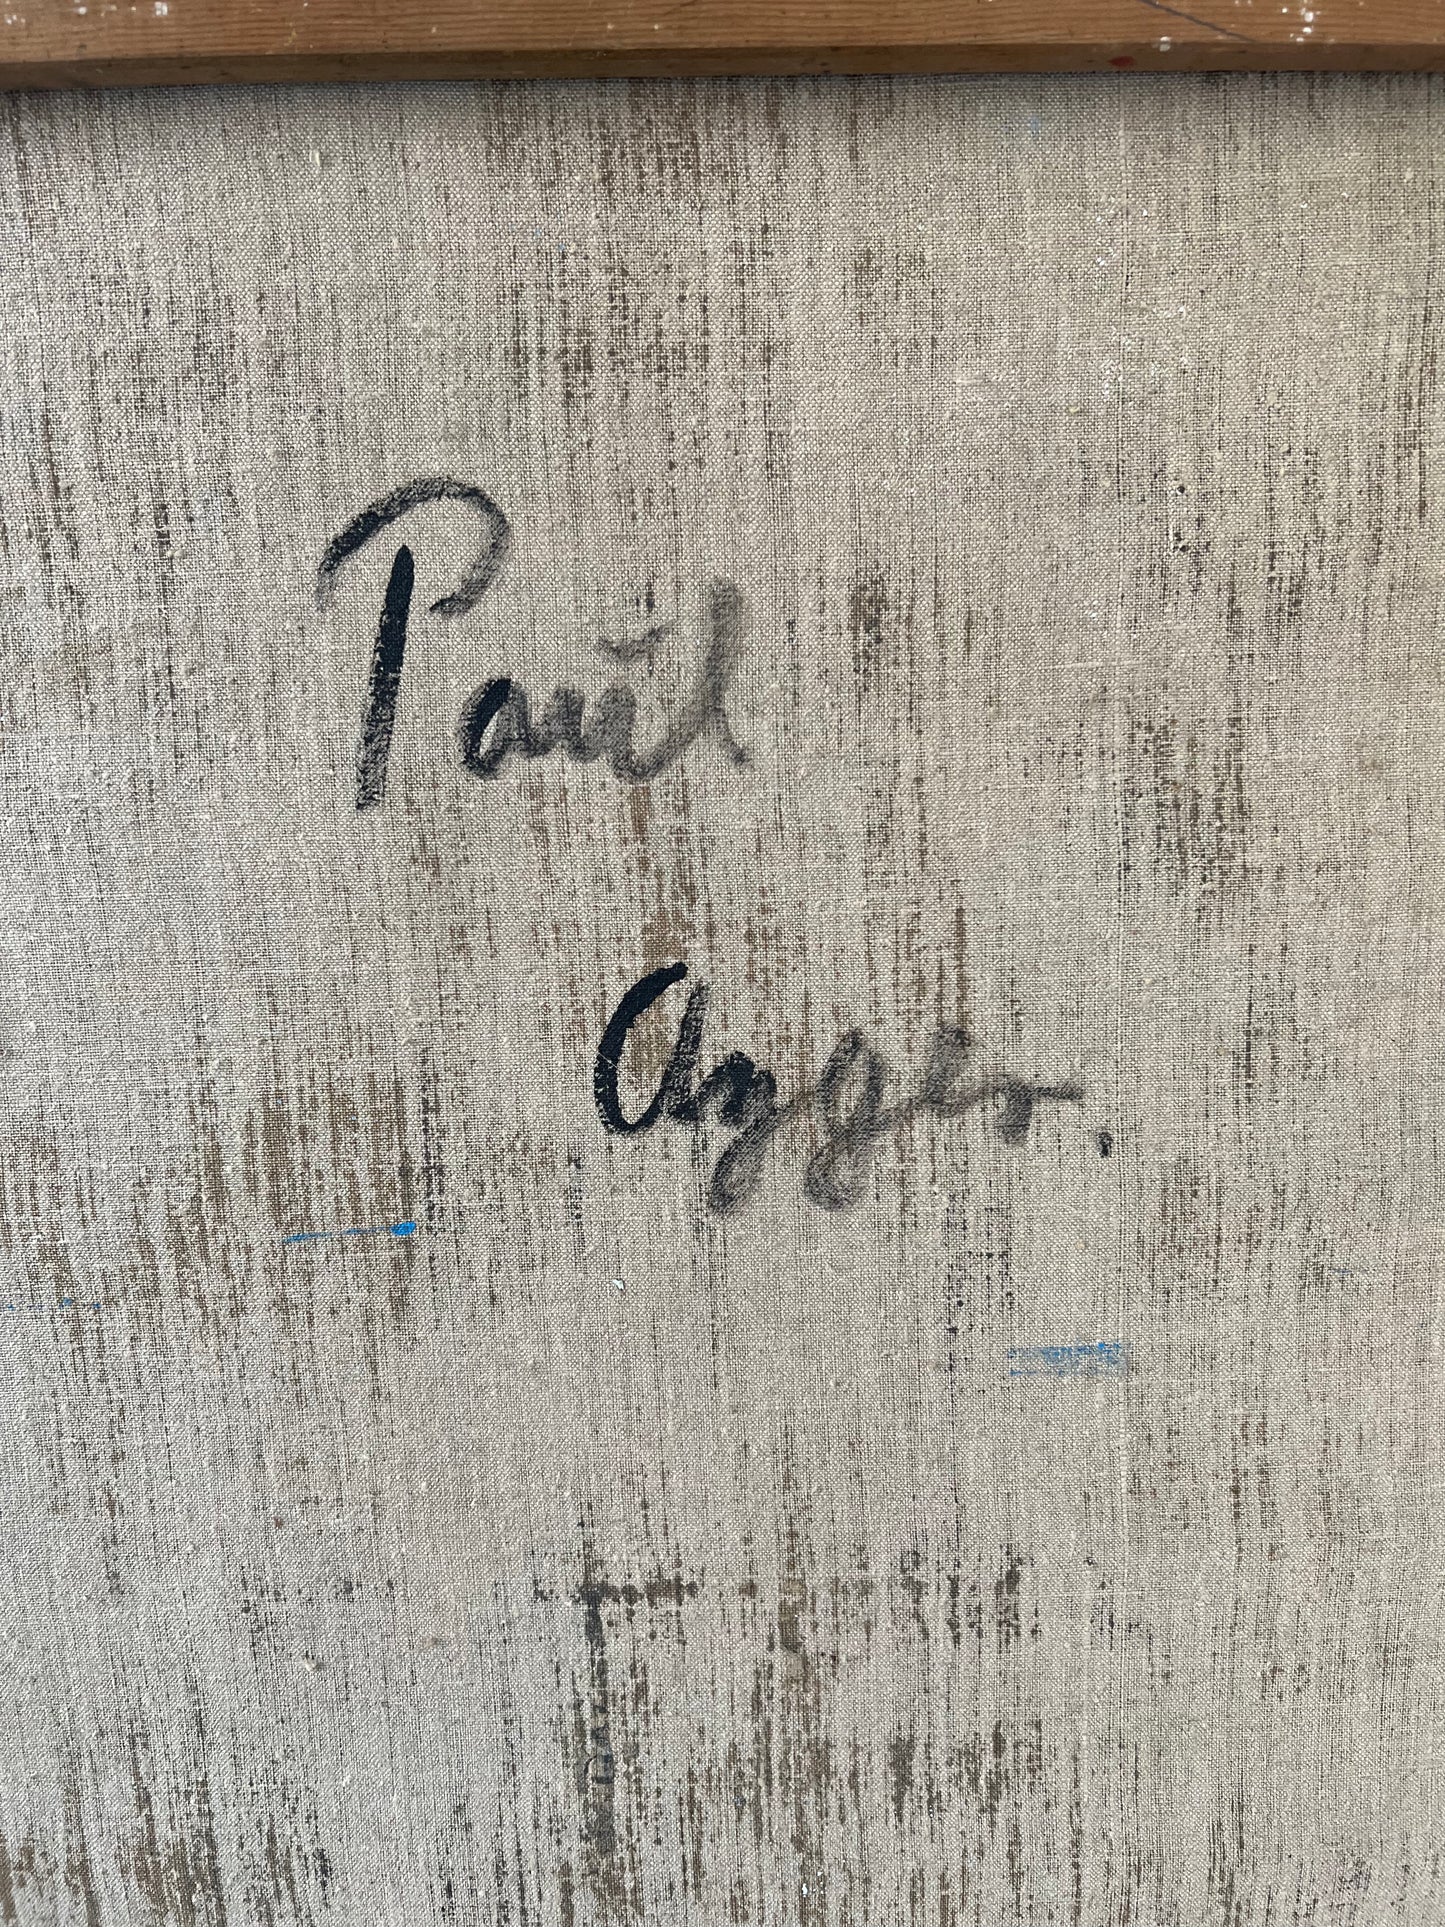 Poul Agger. Composition, 1960’s